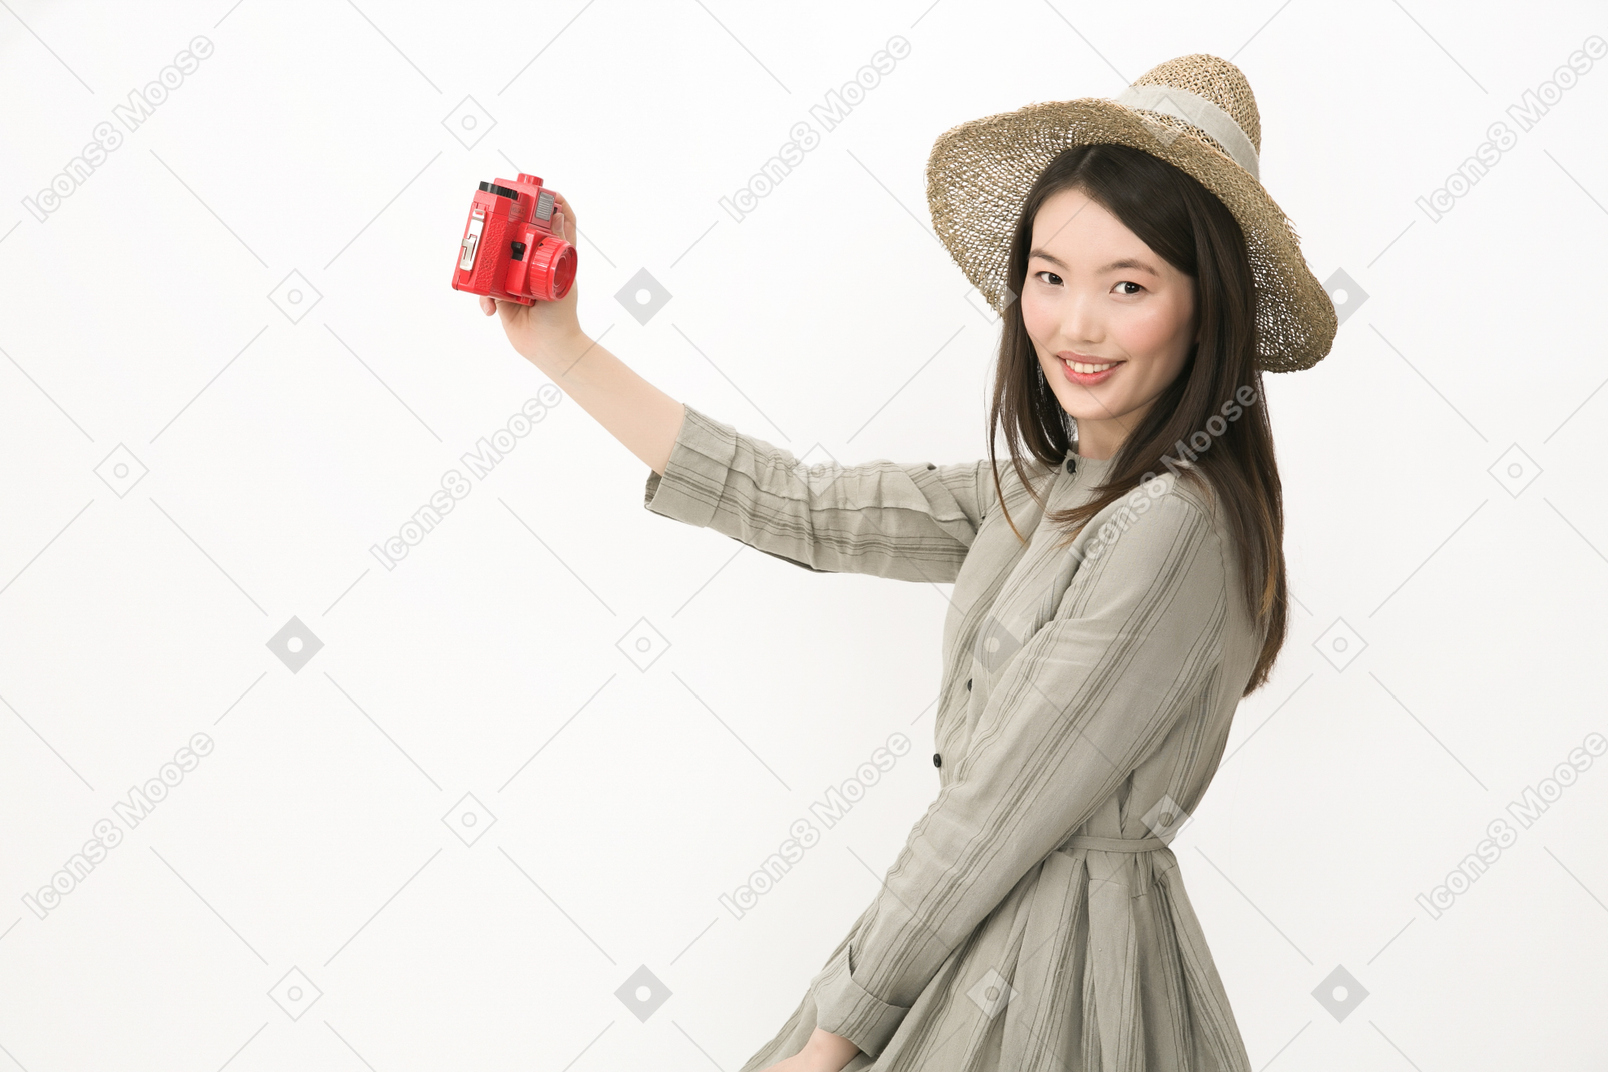 Rif au chapeau debout de profil et faisant un selfie avec caméra rouge